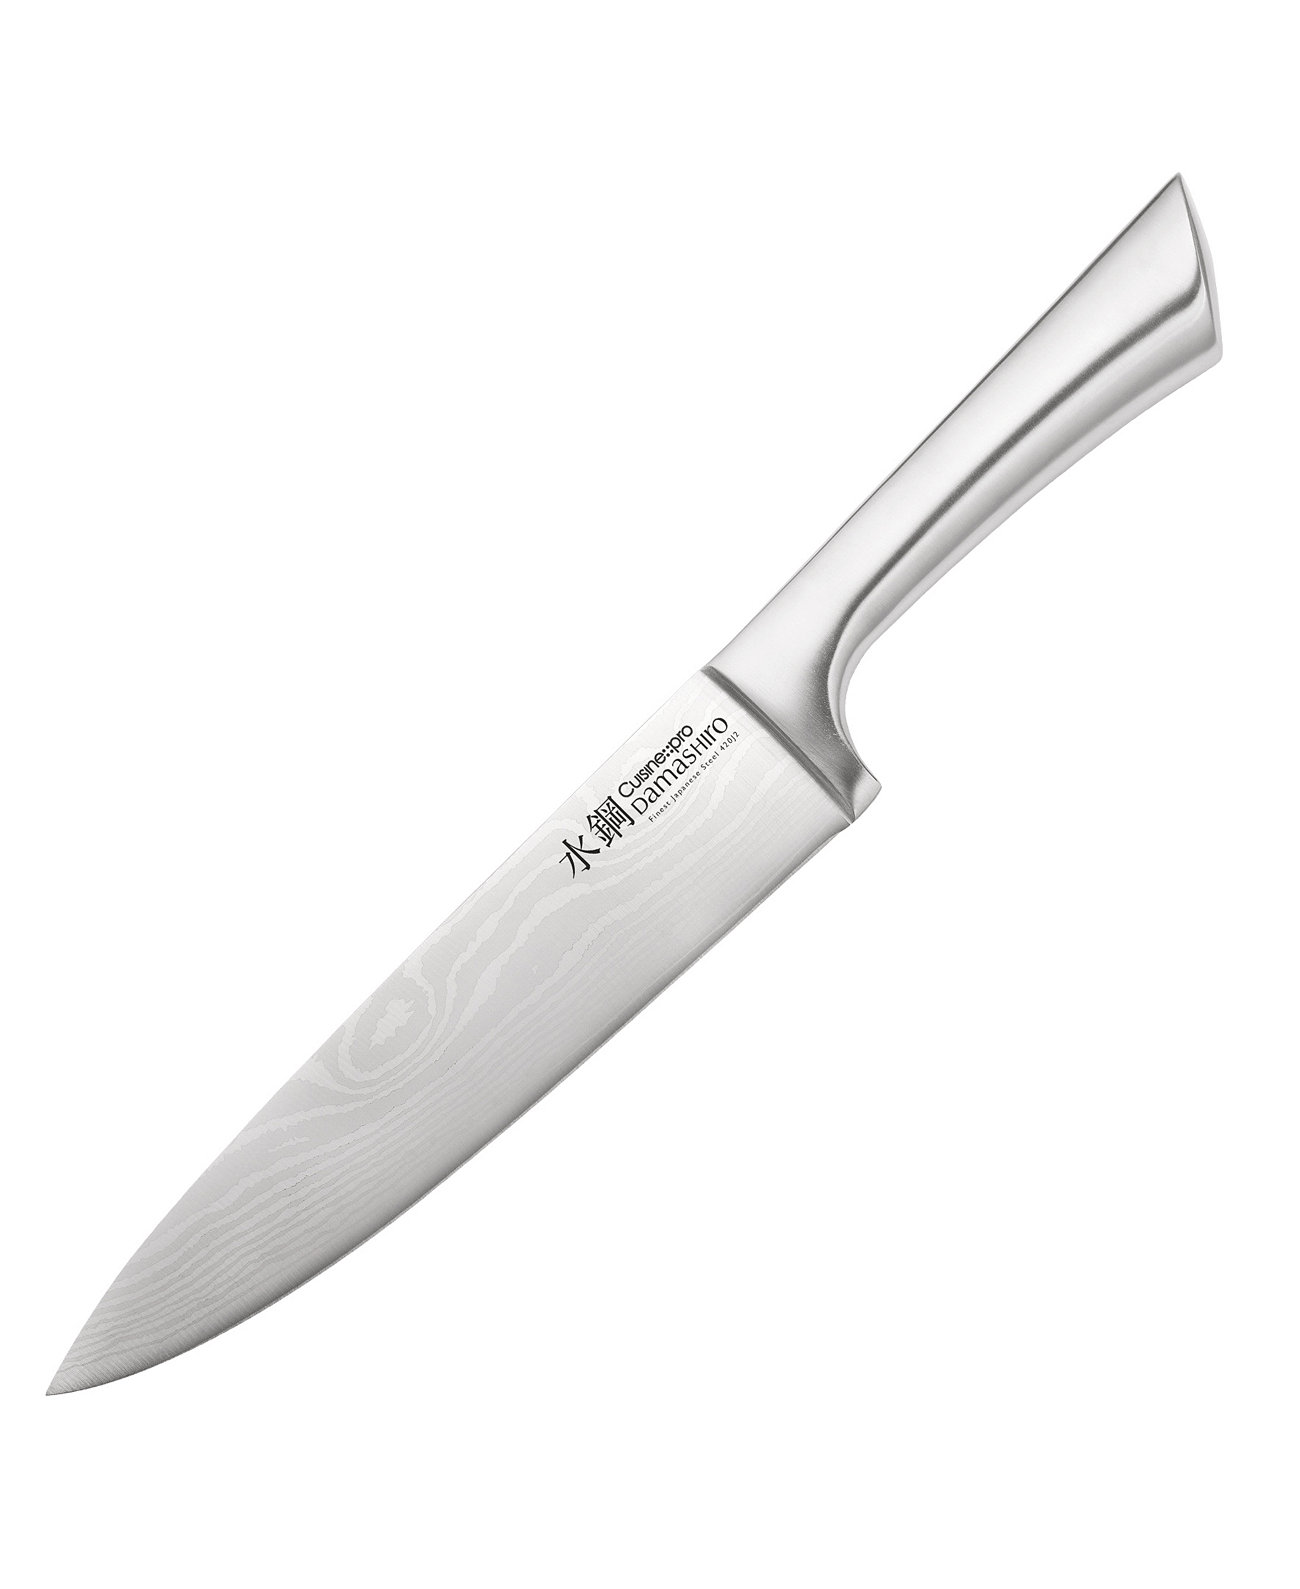 Дамасиро 8-дюймовый поварской нож Cuisine::pro®